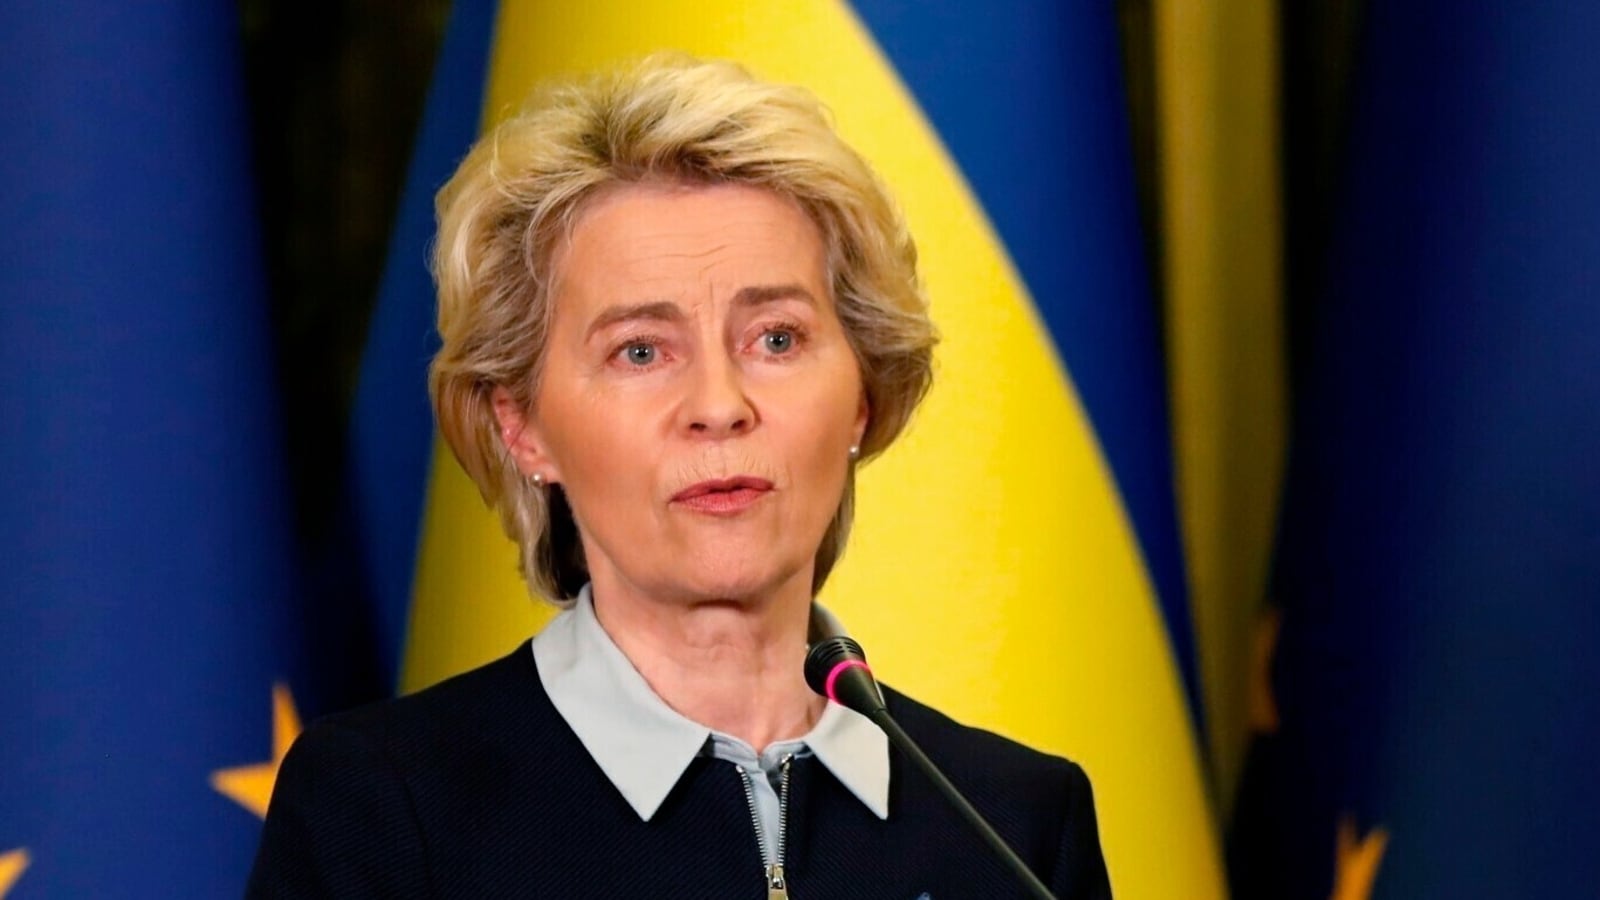 Europe facing unprovoked attack by Russia against Ukraine: Ursula von der Leyen